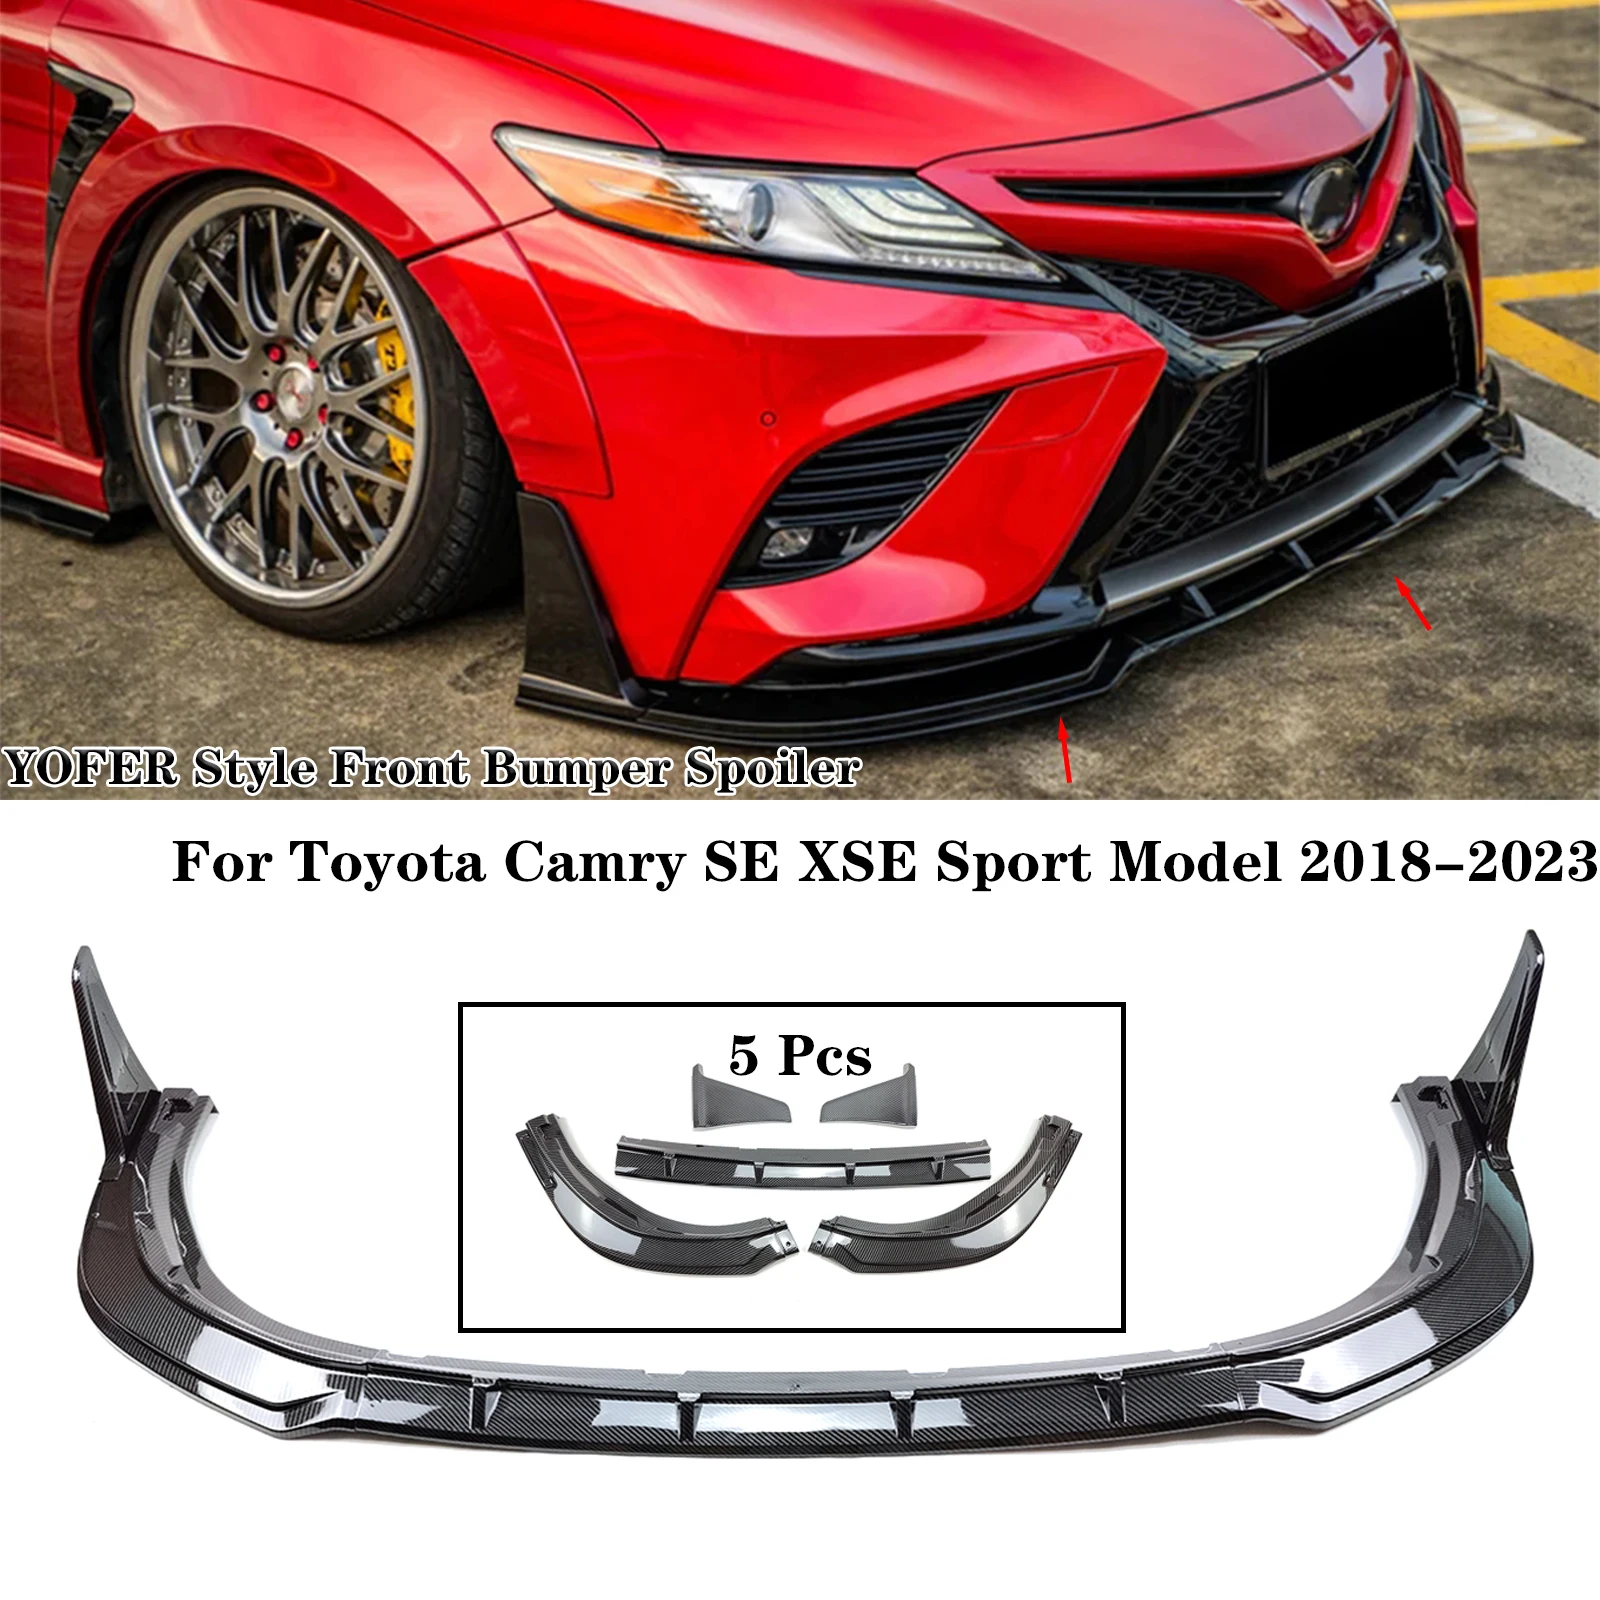 

Для Toyota Camry SE XSE 2018-2023, спортивный передний бампер, спойлер, разветвитель губ, стиль YOFER, корпус, глянцевый черный, углеродное волокно